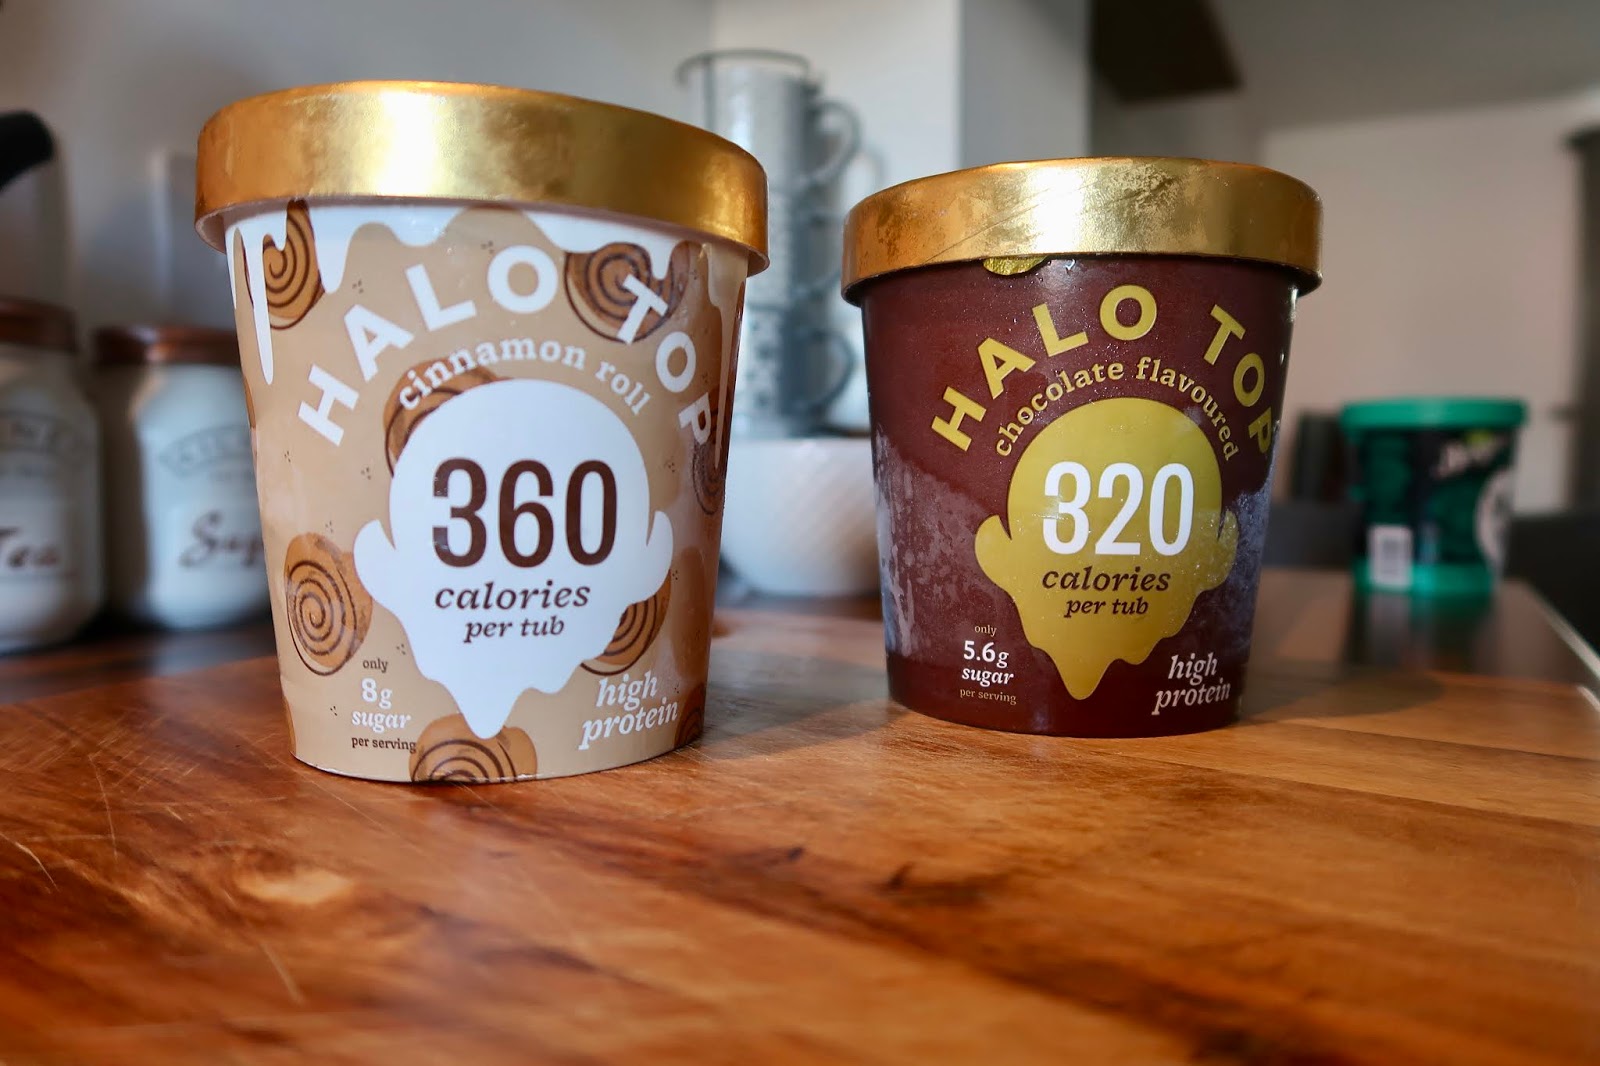 halo-top-ice-cream